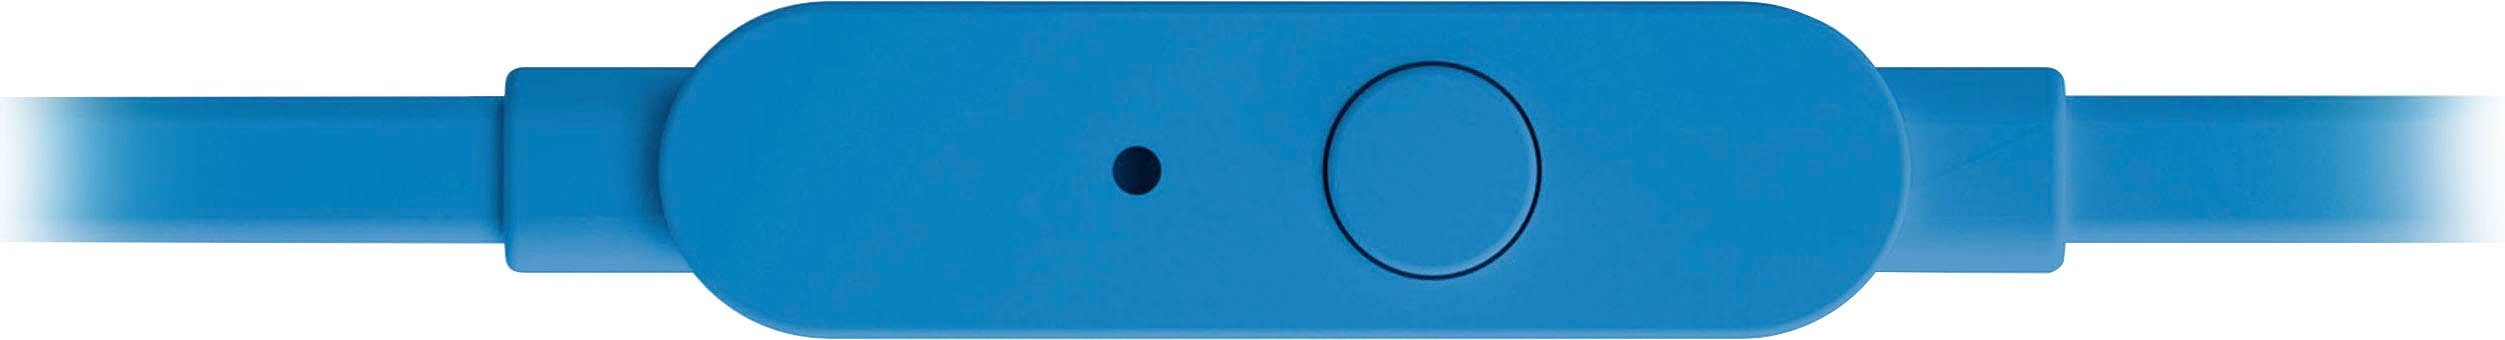 JBL blau In-Ear-Kopfhörer T110